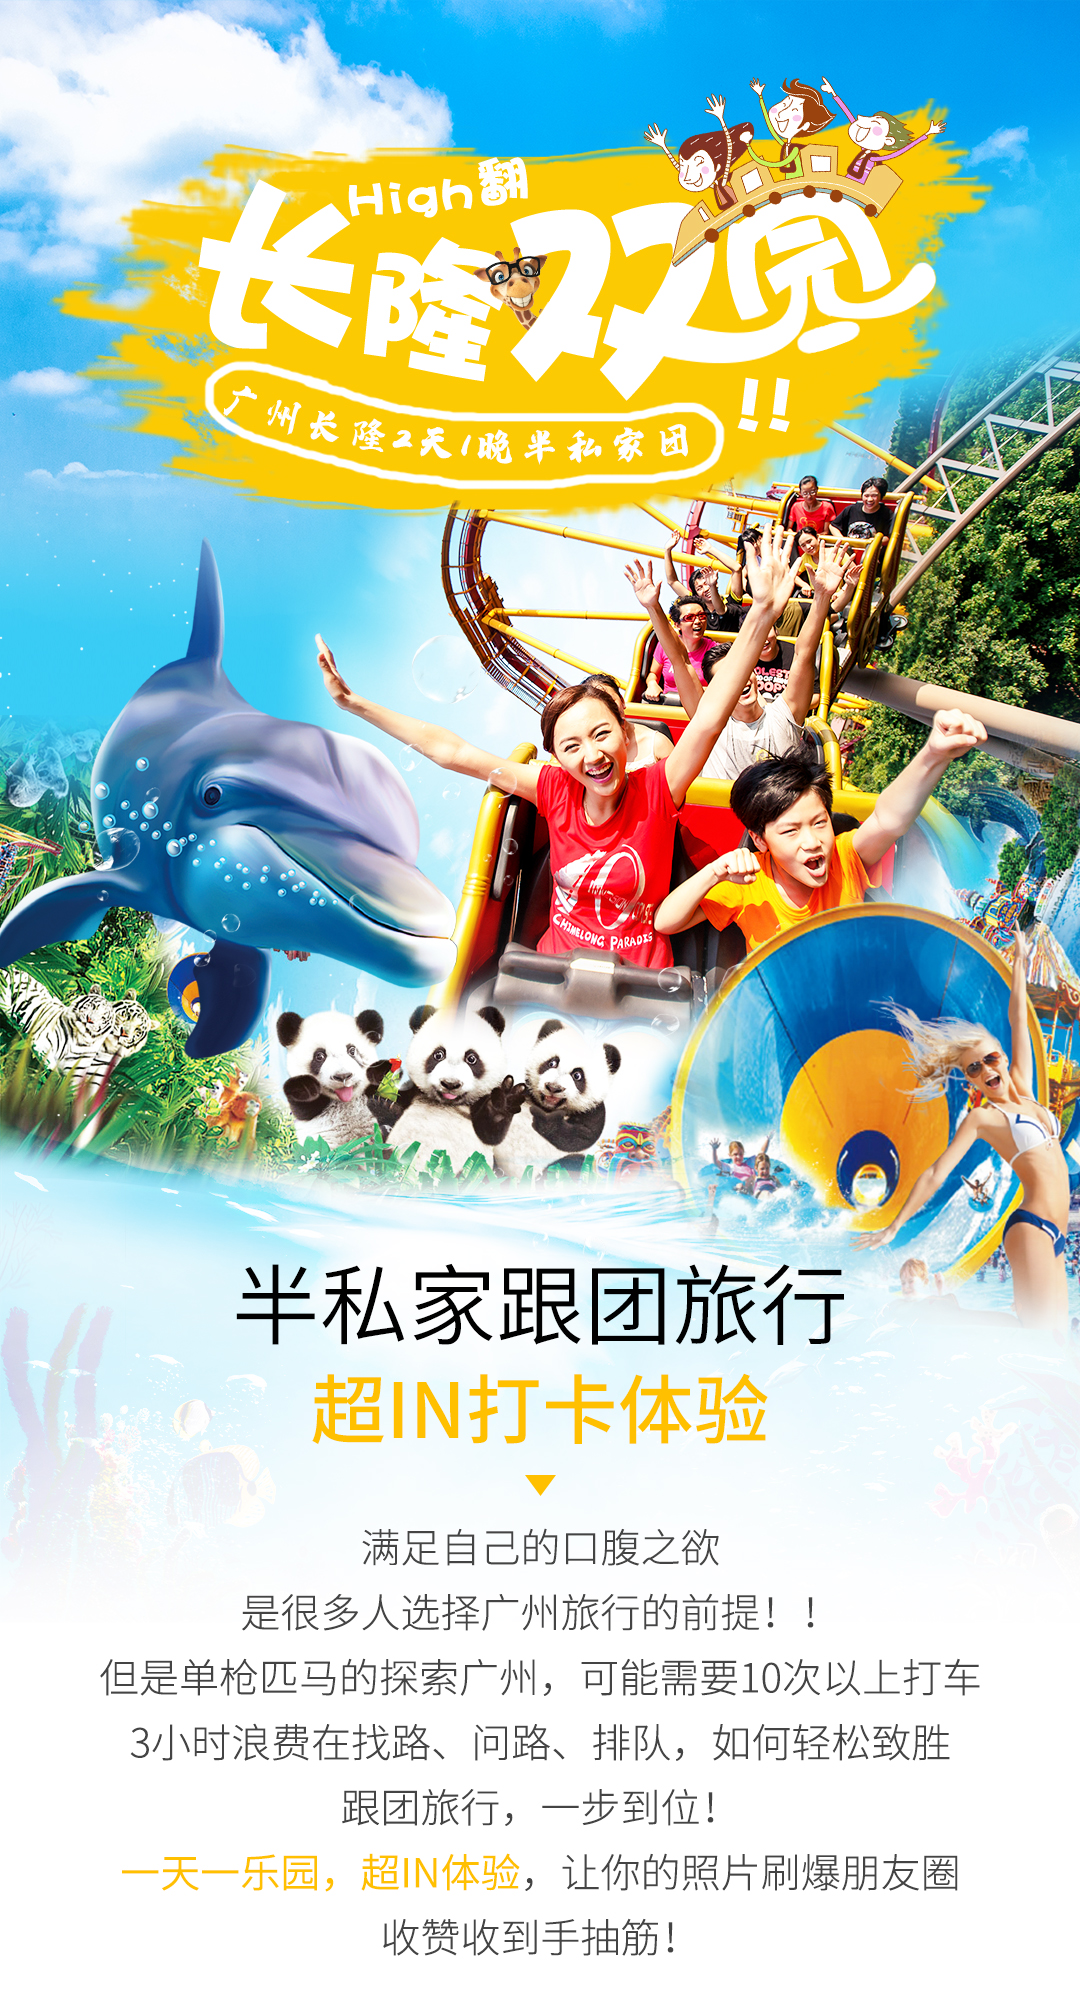 广州长隆度假区纯玩2日游·欢乐世界or水上乐园 动物世界·经典乐园不